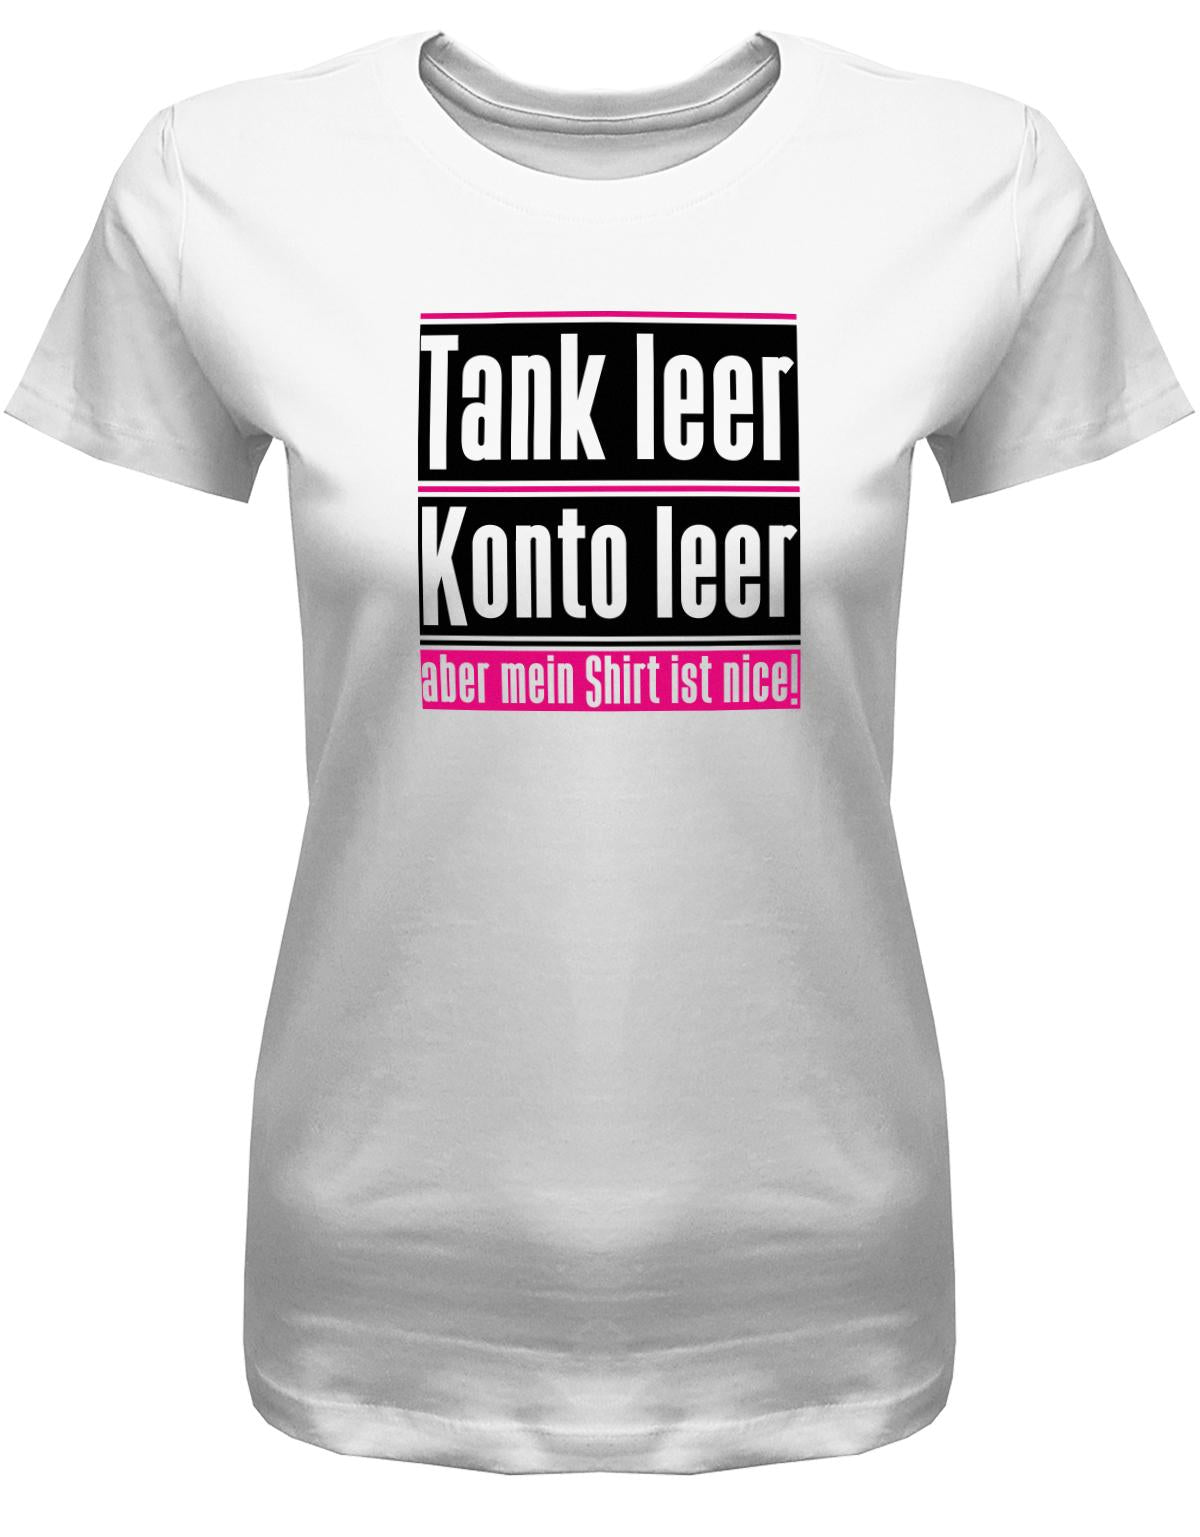 tank-leer-konto-leer-shirt-geil-damen-shirt-weiss